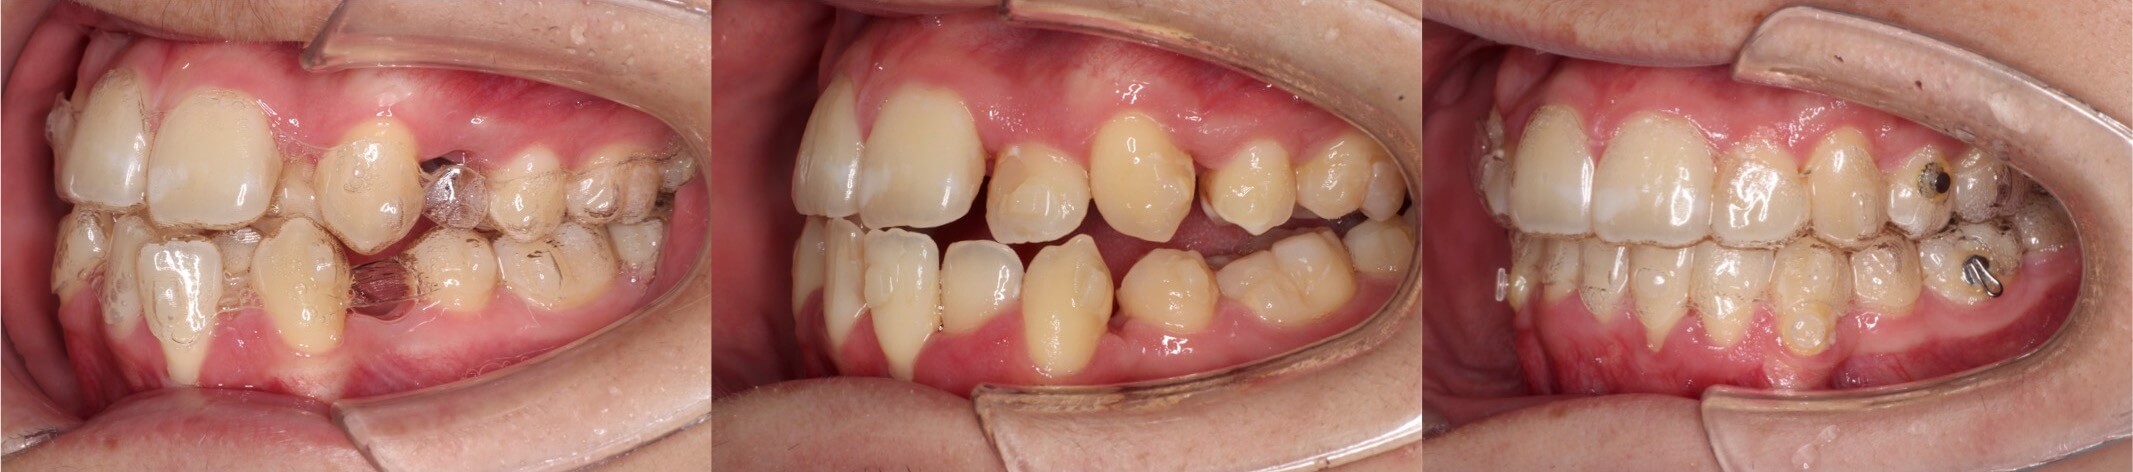 歯肉退縮治療・インビザライン